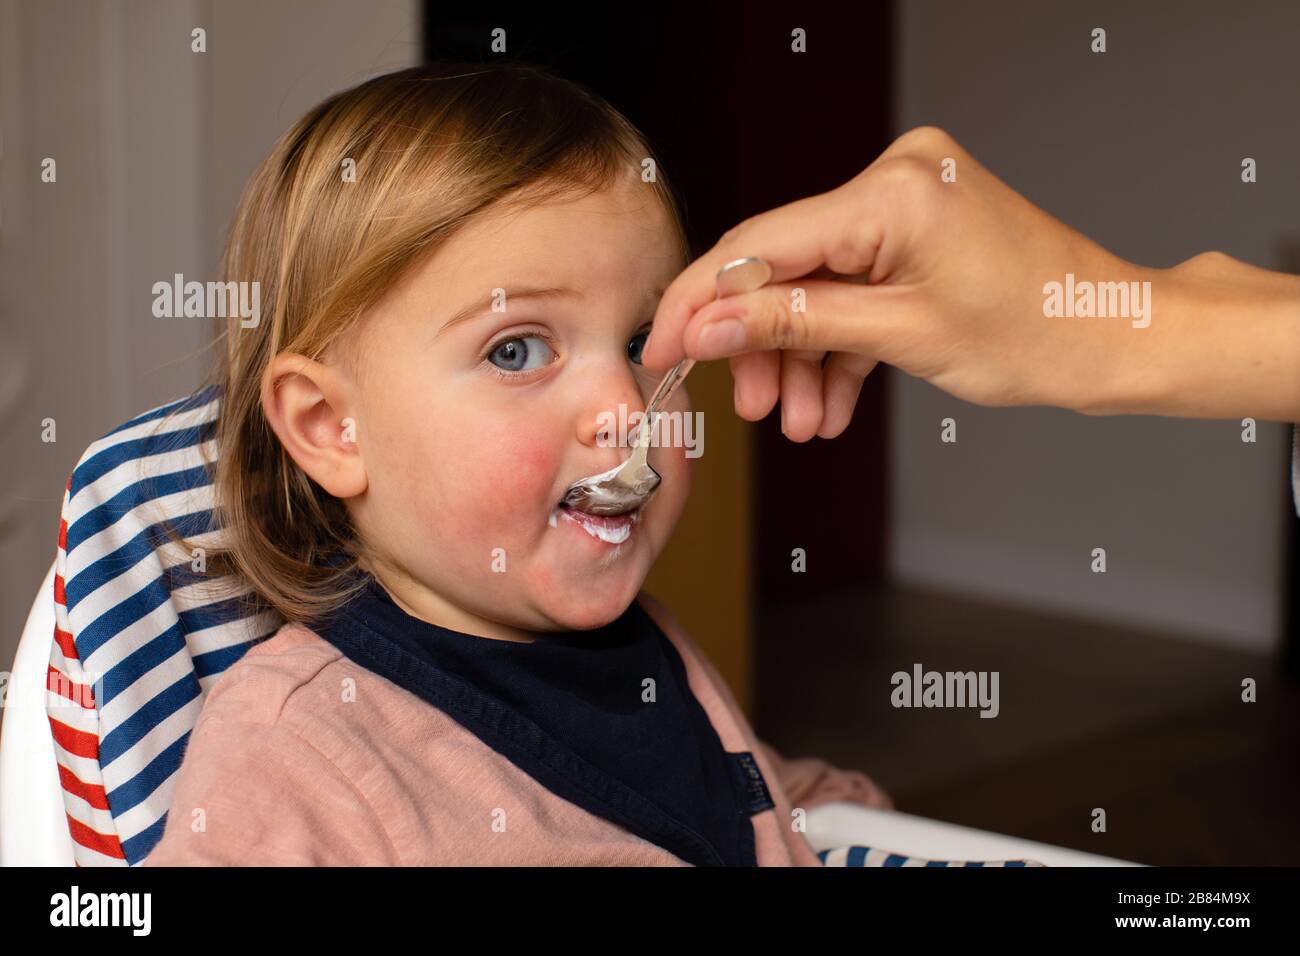 Eltern zuschneiden, die Baby mit Haferbrei füttern Stockfoto